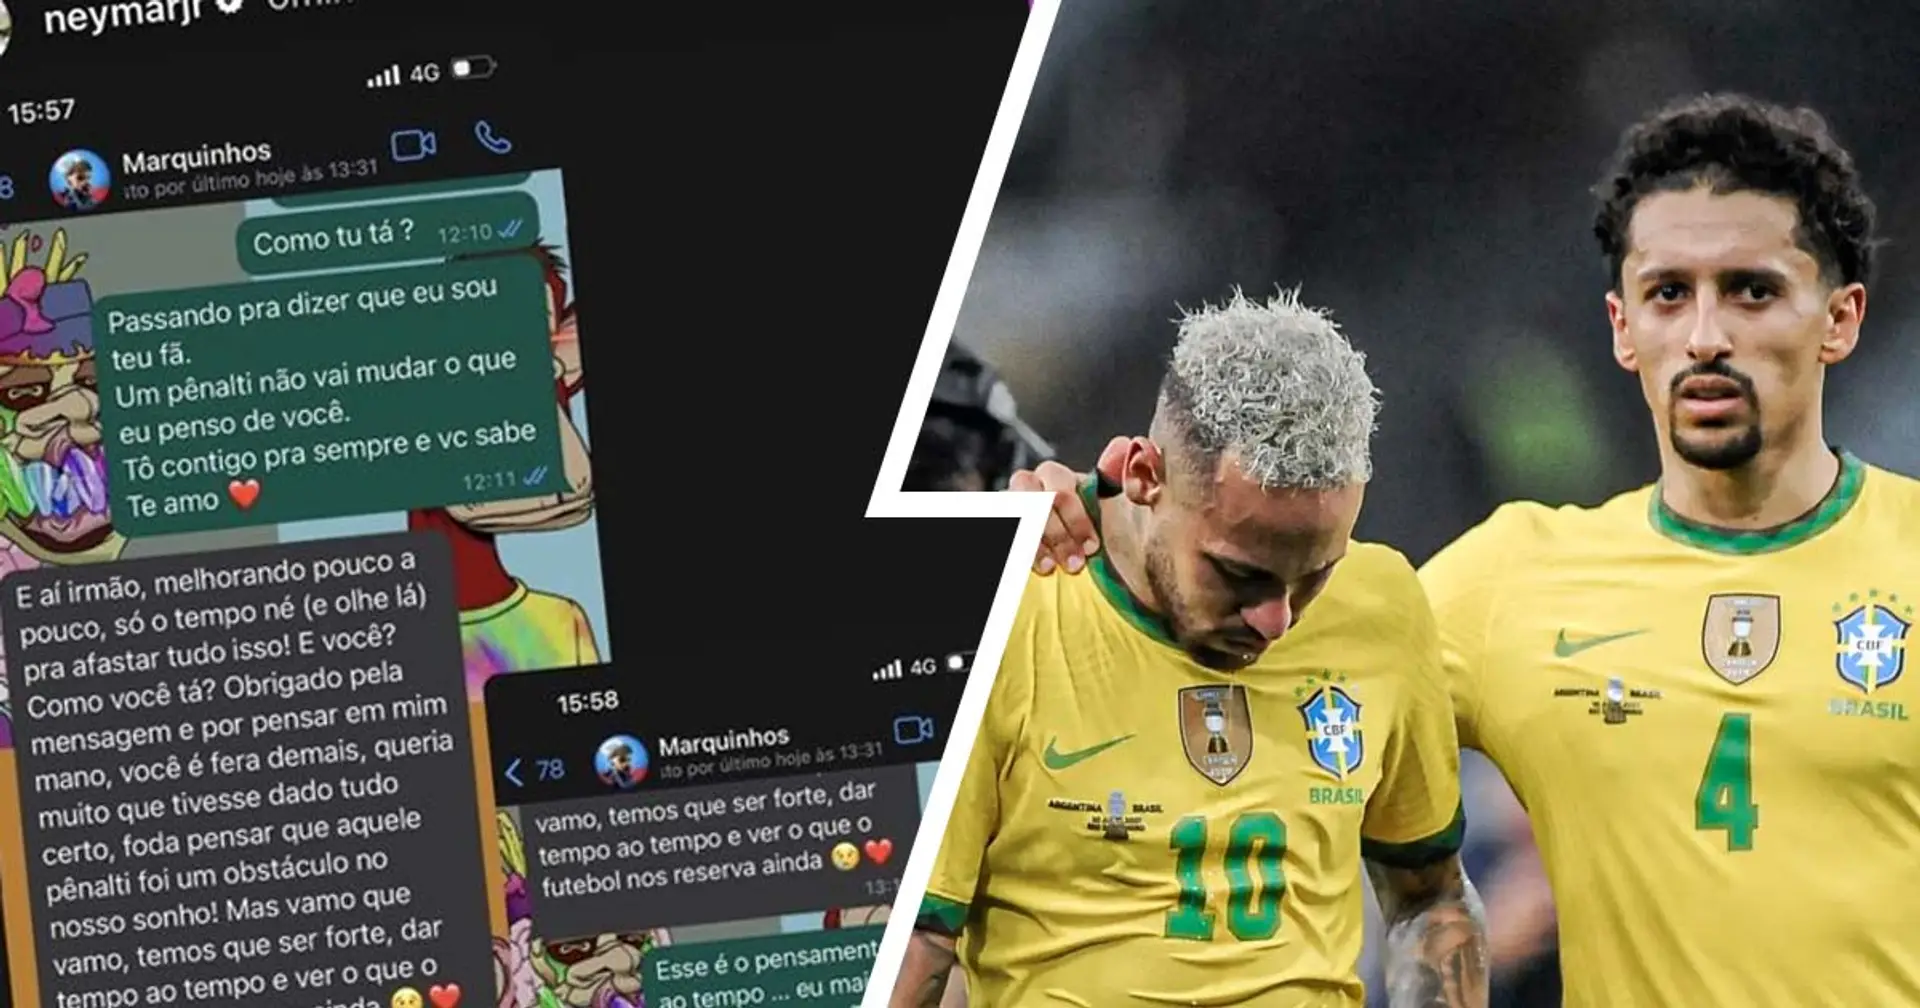 "Reste fort", Neymar et Marquinhos se réconfortent sur Instagram après l'élimination du Brésil